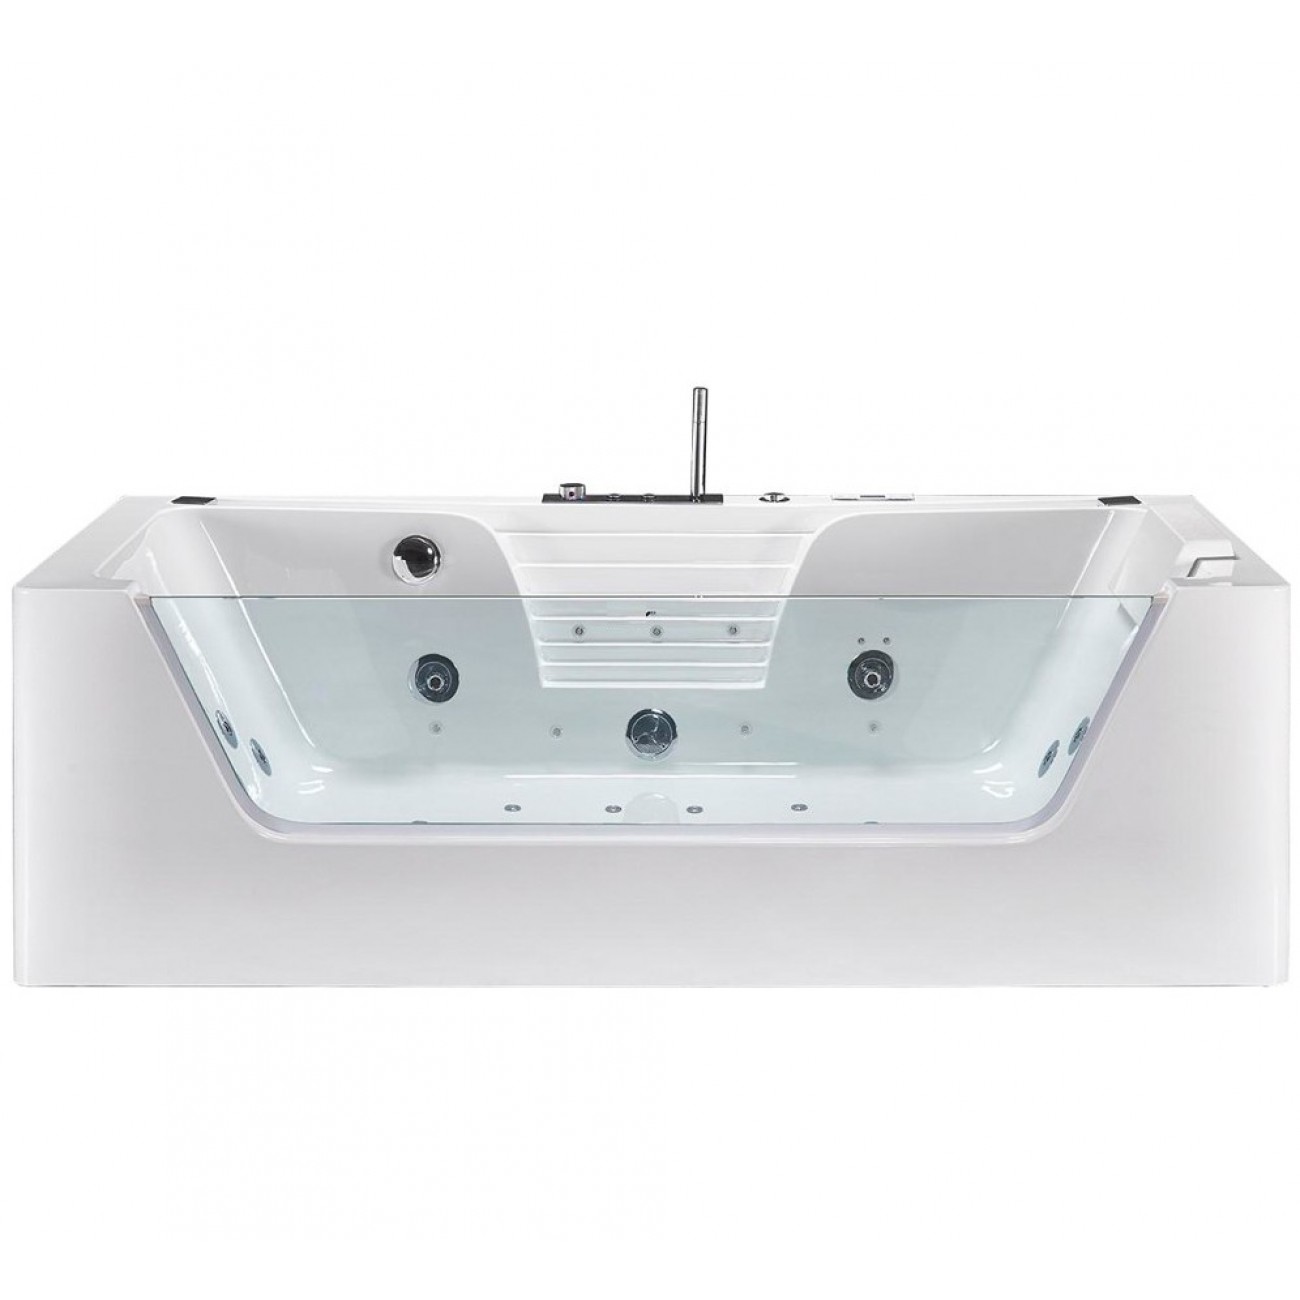 Гидромассажная ванна Frank 170x85 F150 пристенная, белая